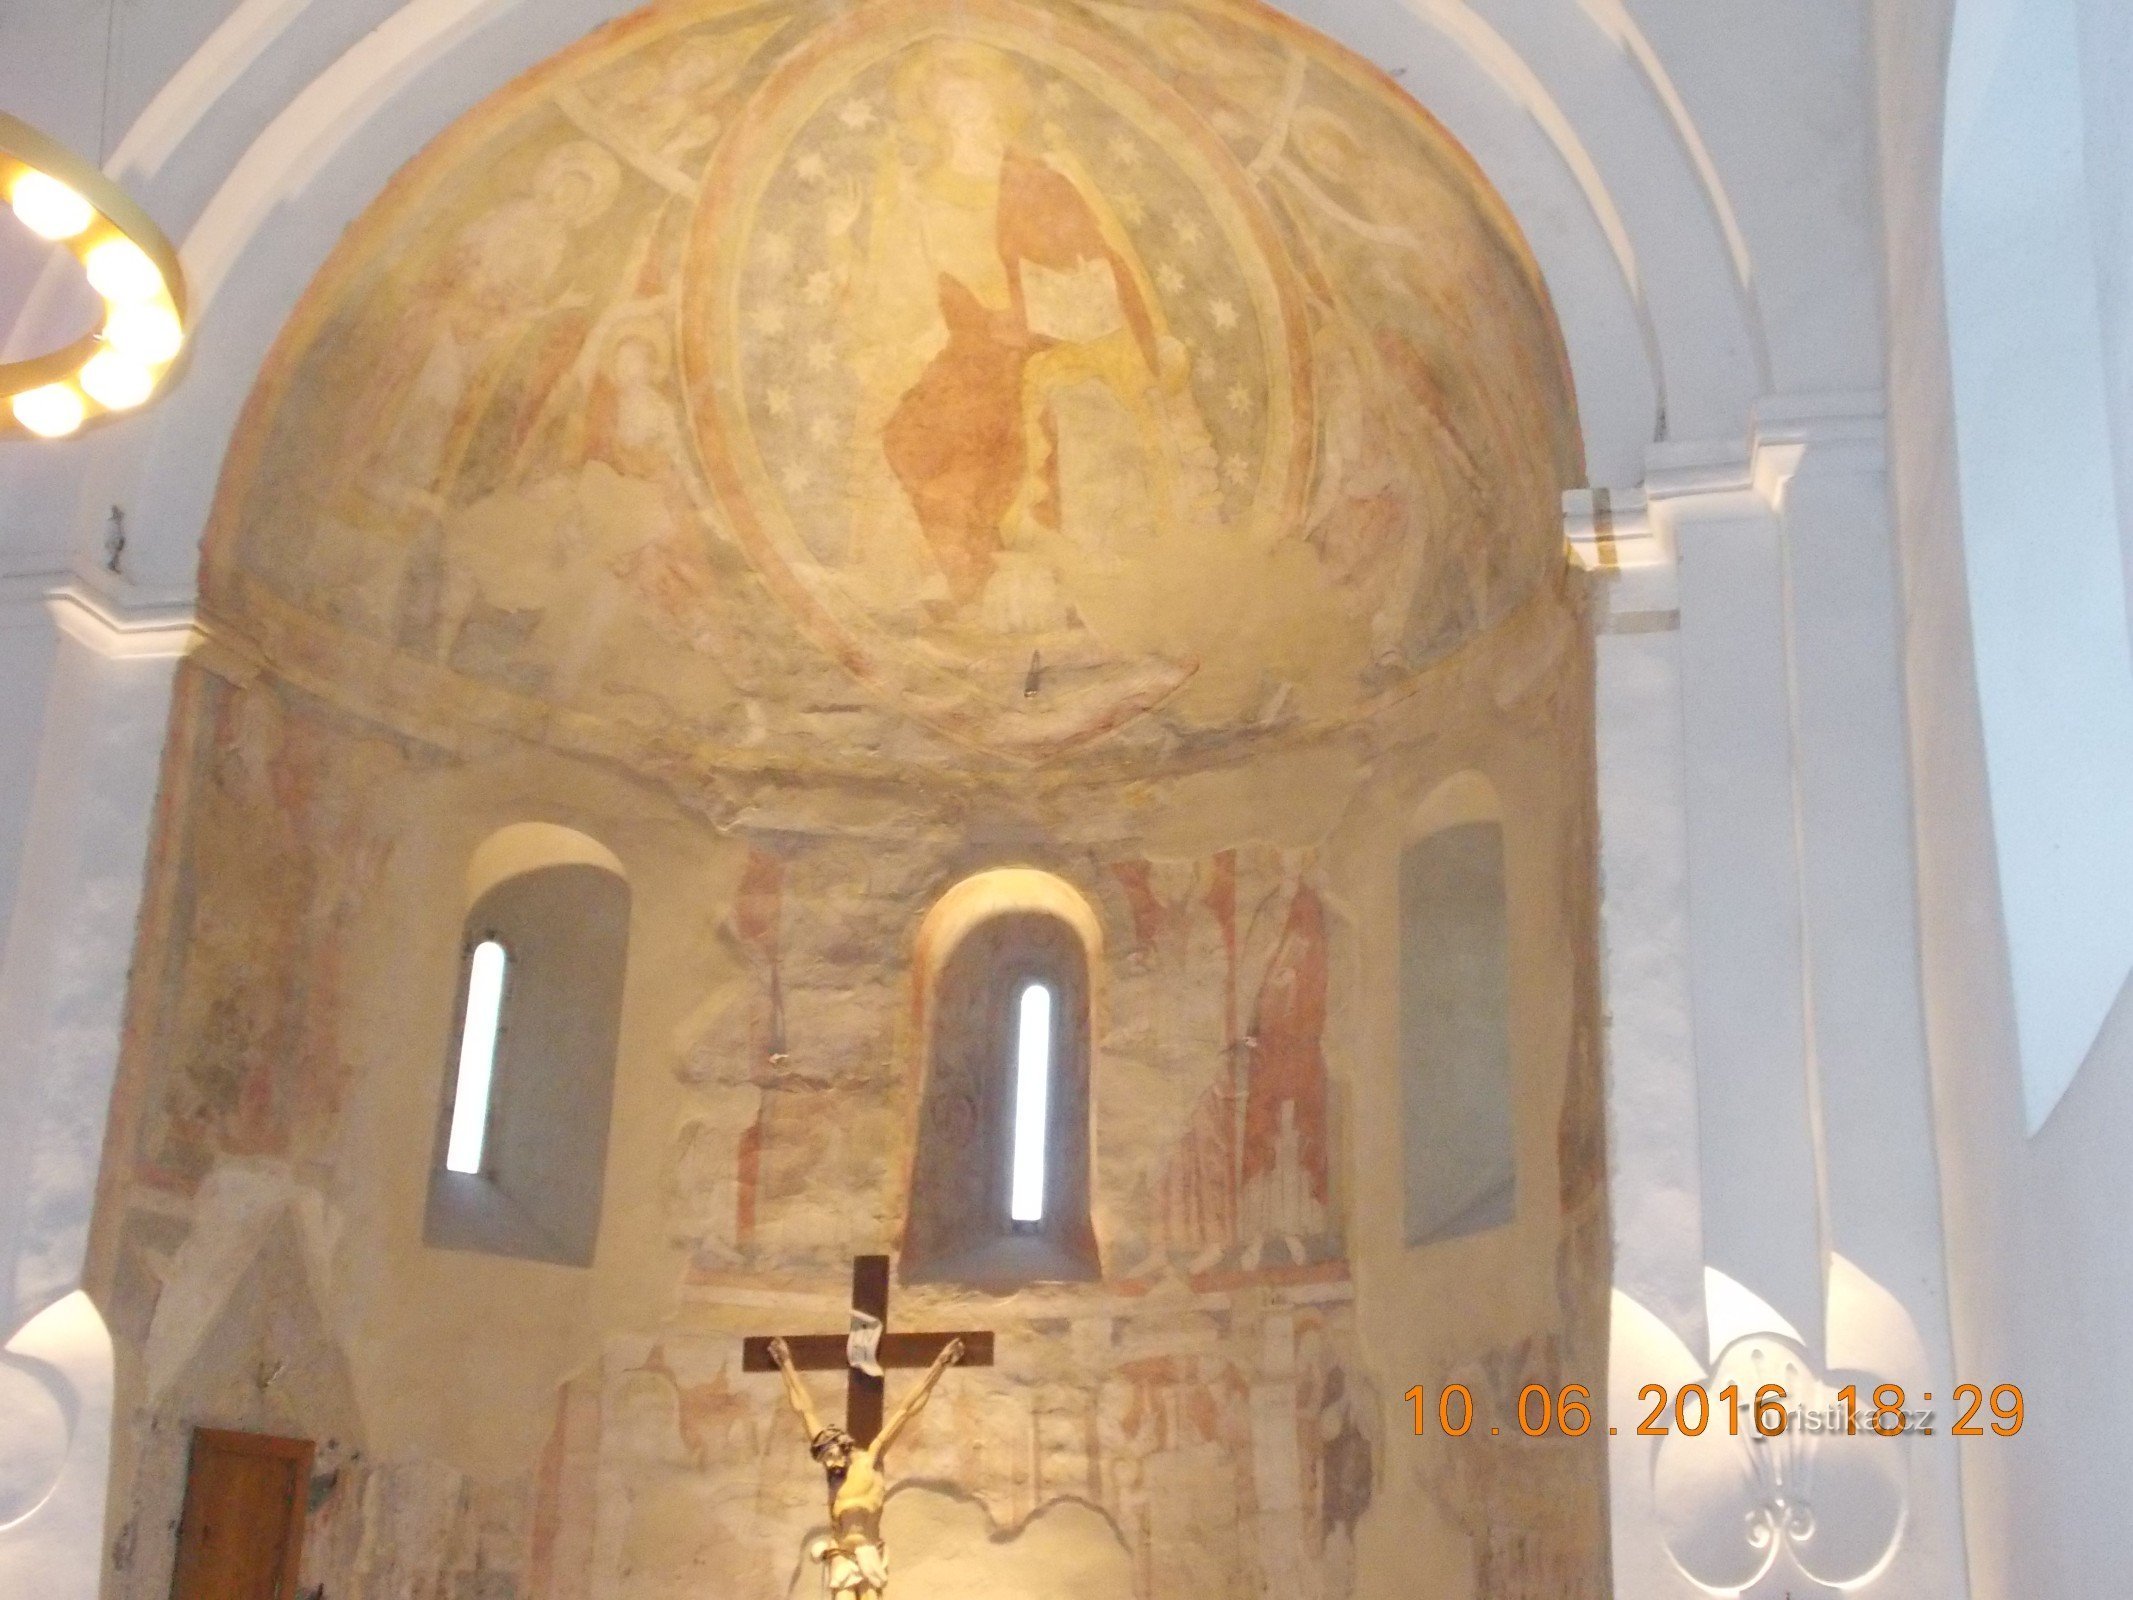 Afrescos românicos na abside